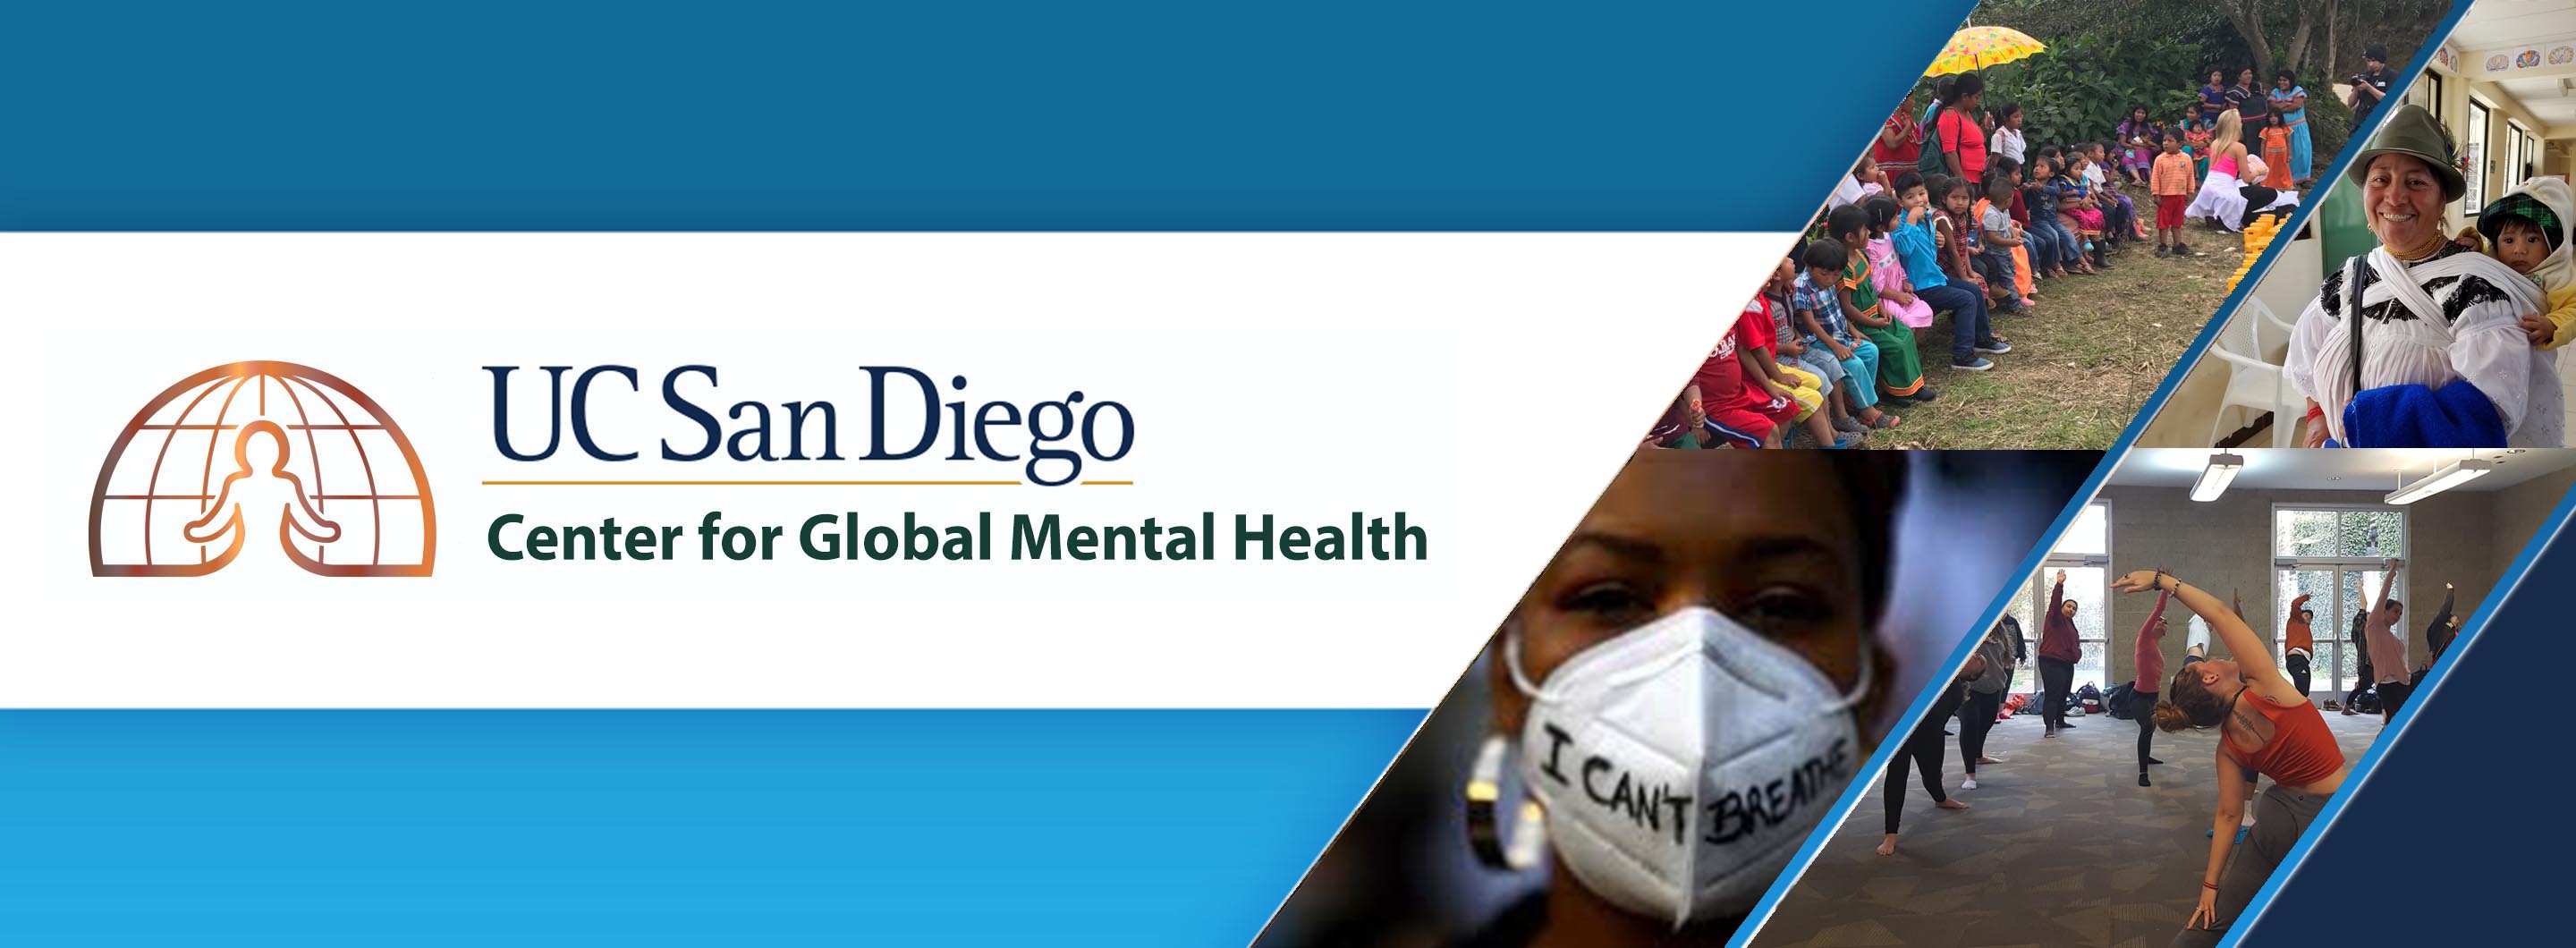 Center for Global Mental Health banner